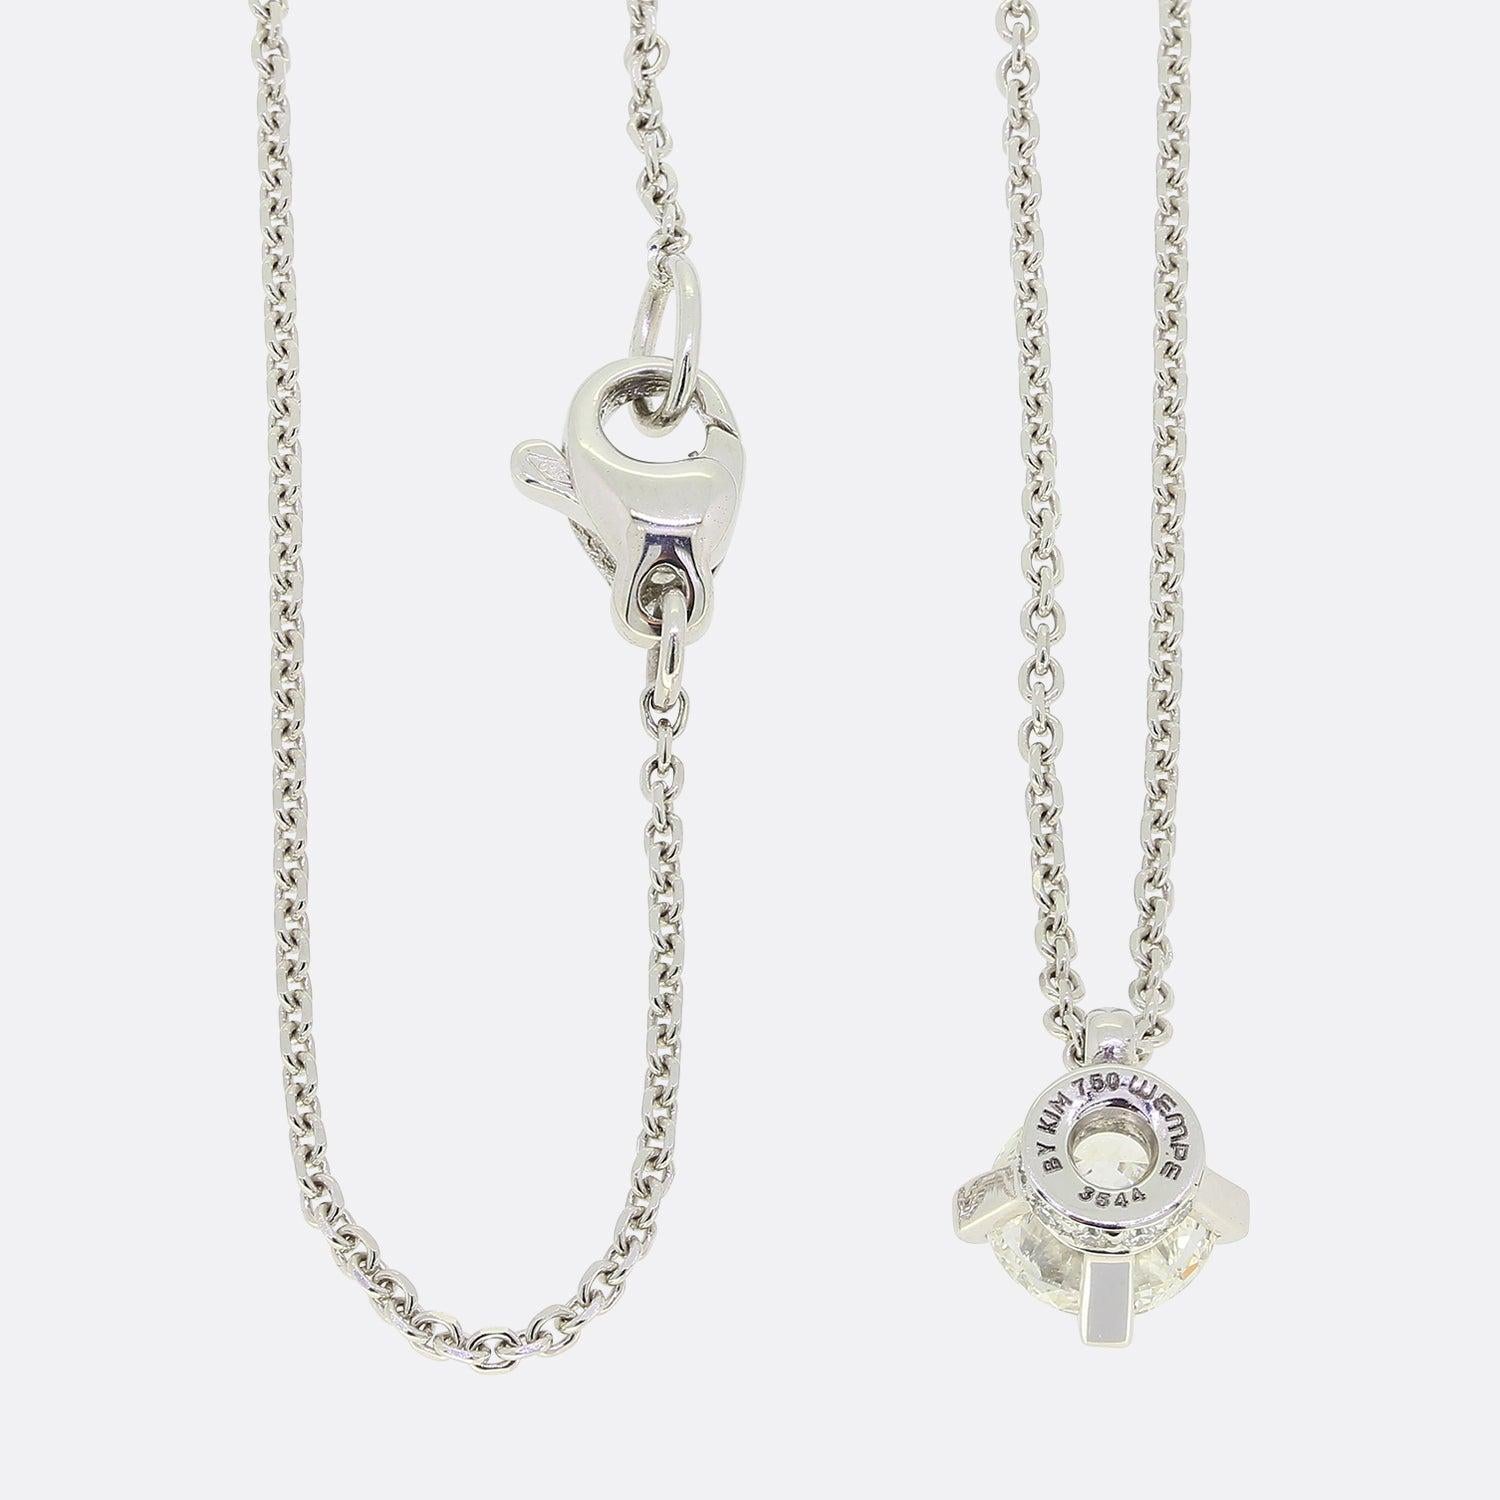 Brilliant Cut Wempe Splendora Pure Diamond Pendant Necklace For Sale